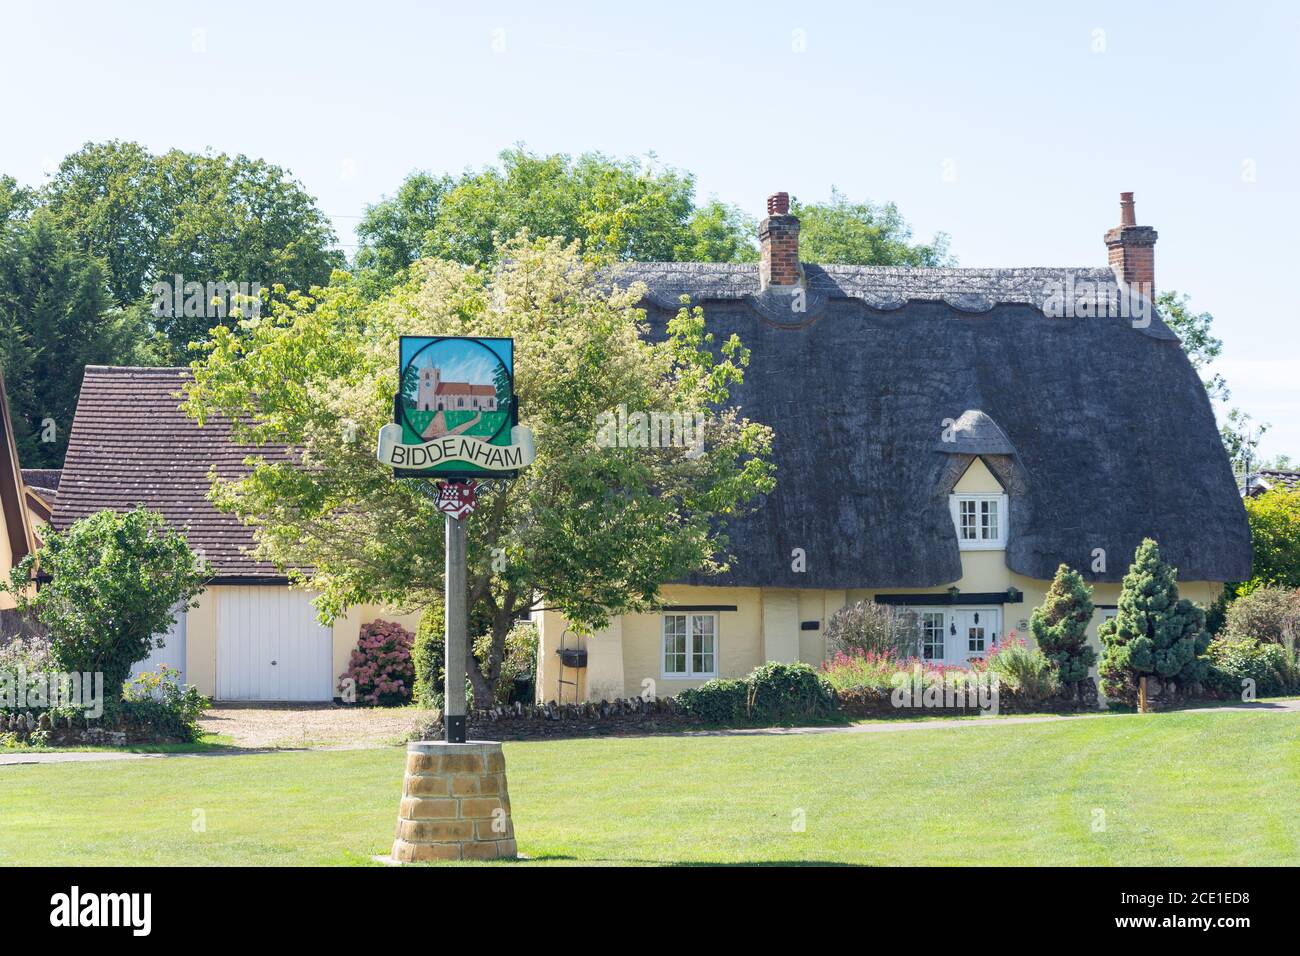 Maison de chaume et panneau de village, The Green, Biddenham, Bedfordshire, Angleterre, Royaume-Uni Banque D'Images